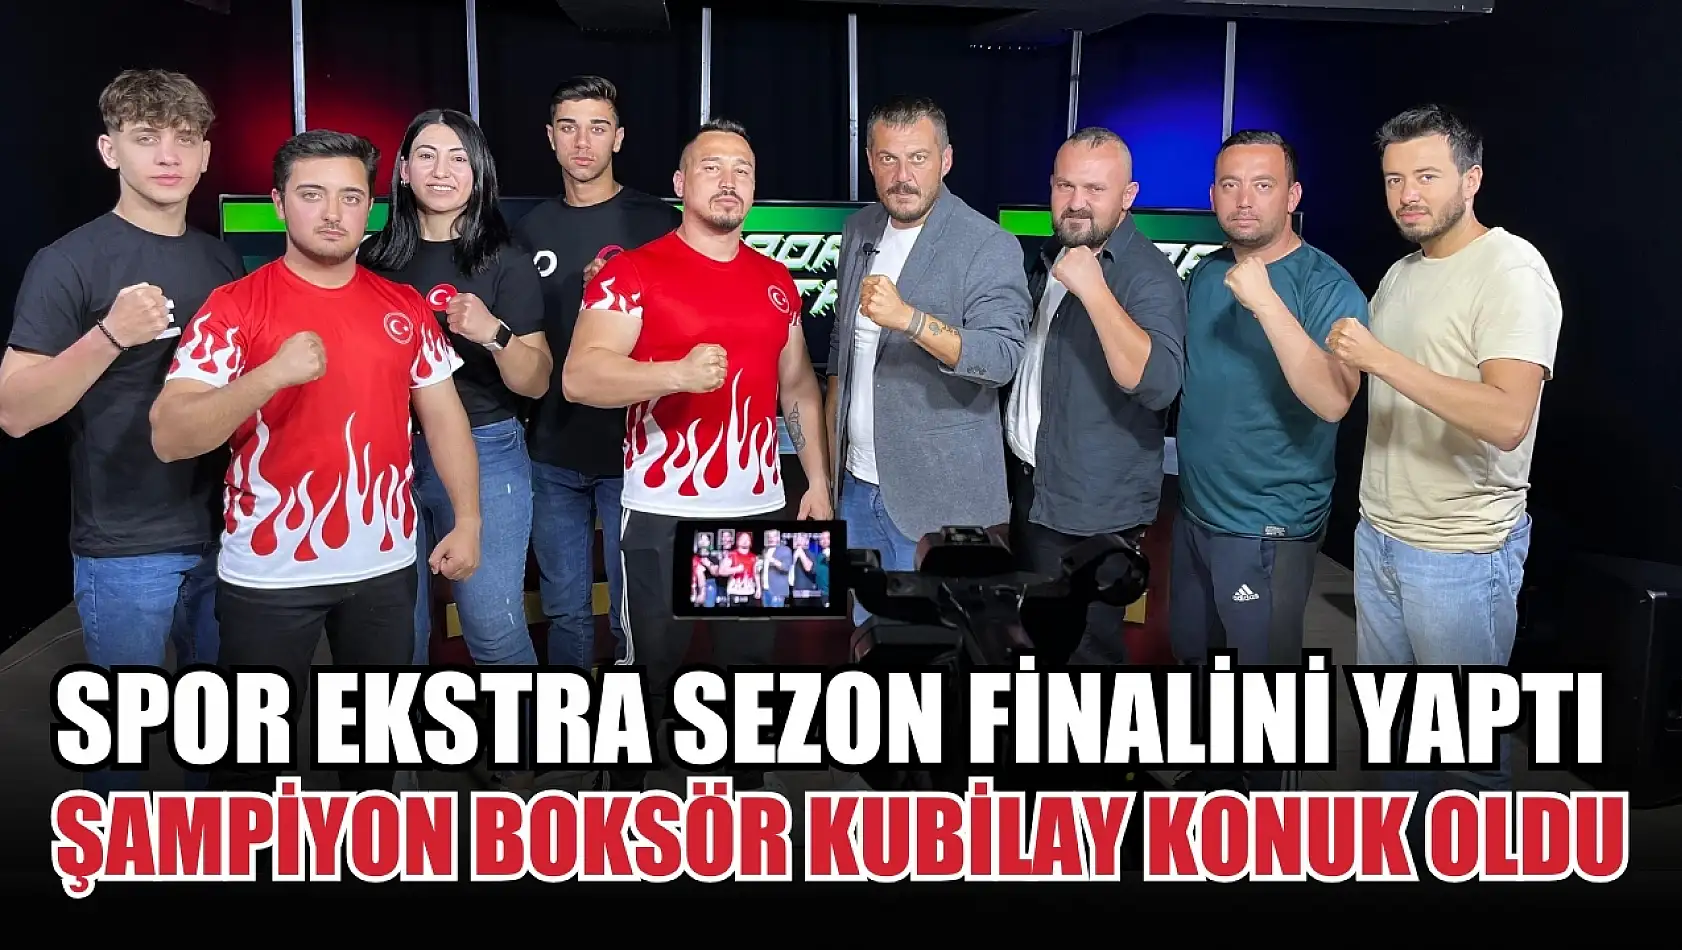 Spor Ekstra sezon finalini yaptı Şampiyon boksör Kubilay Alcu konuk oldu